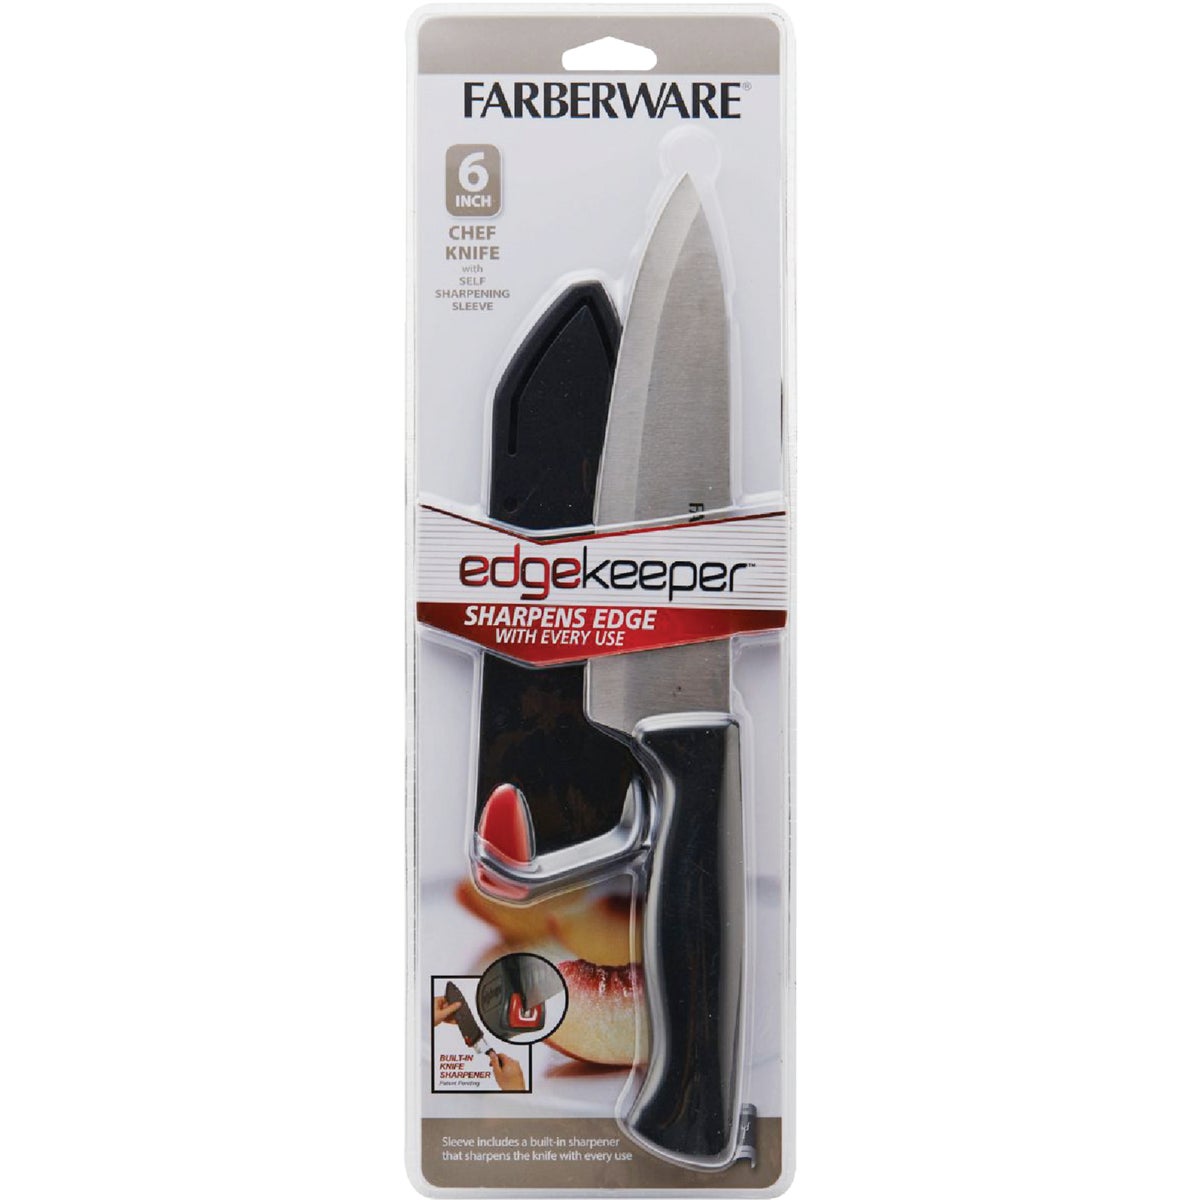 Farberware 6 In. Black Chef Knife with Edgekeeper Sheath